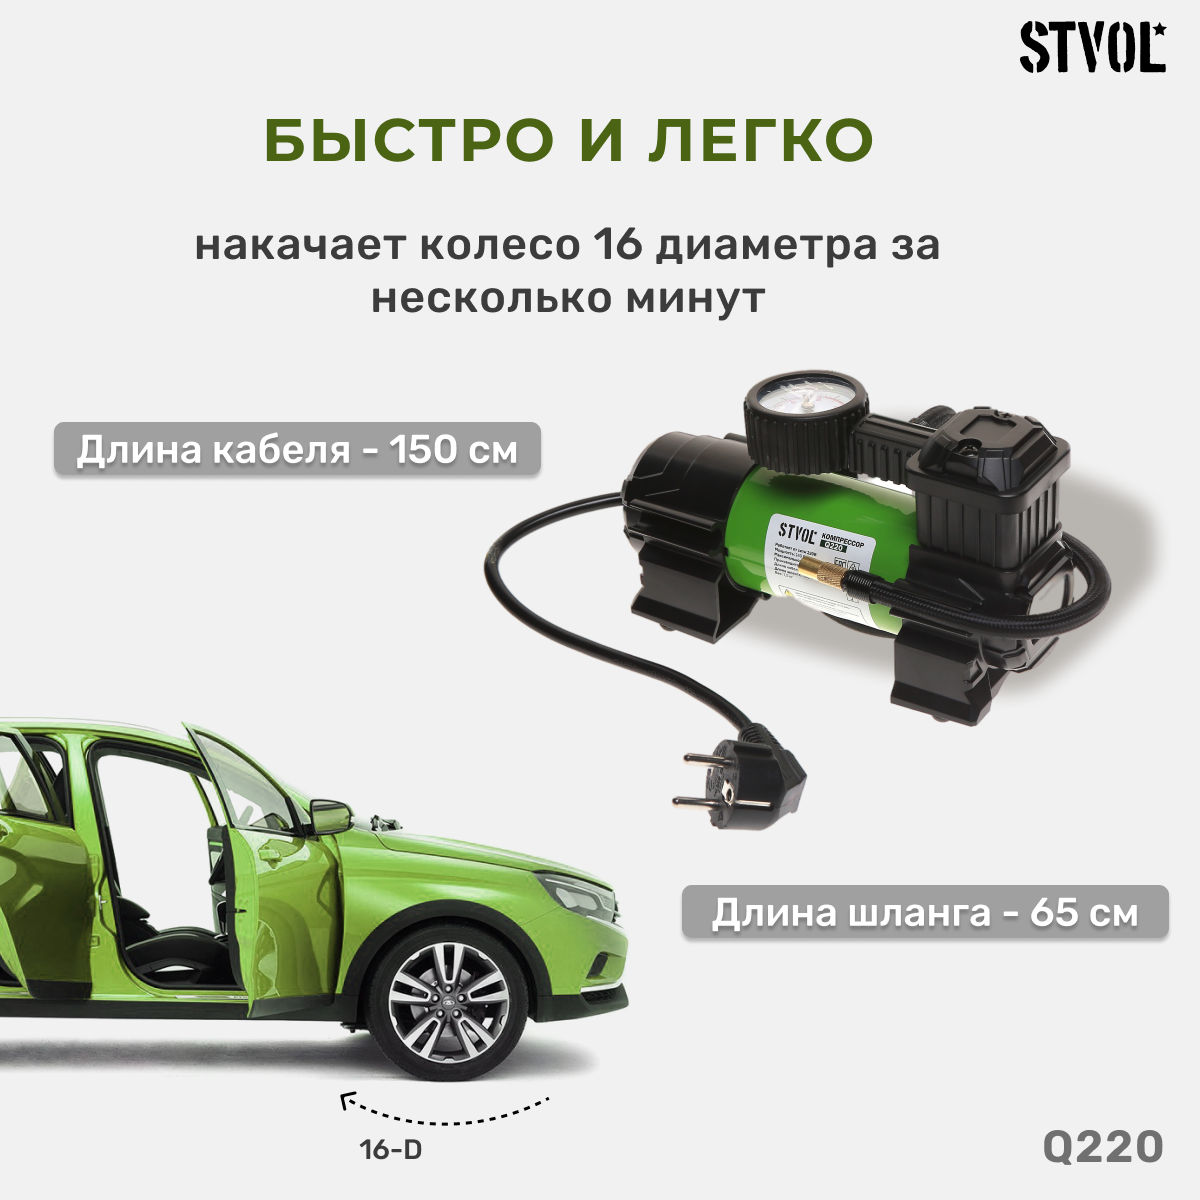 Автомобильный компрессор STVOL - фото №2